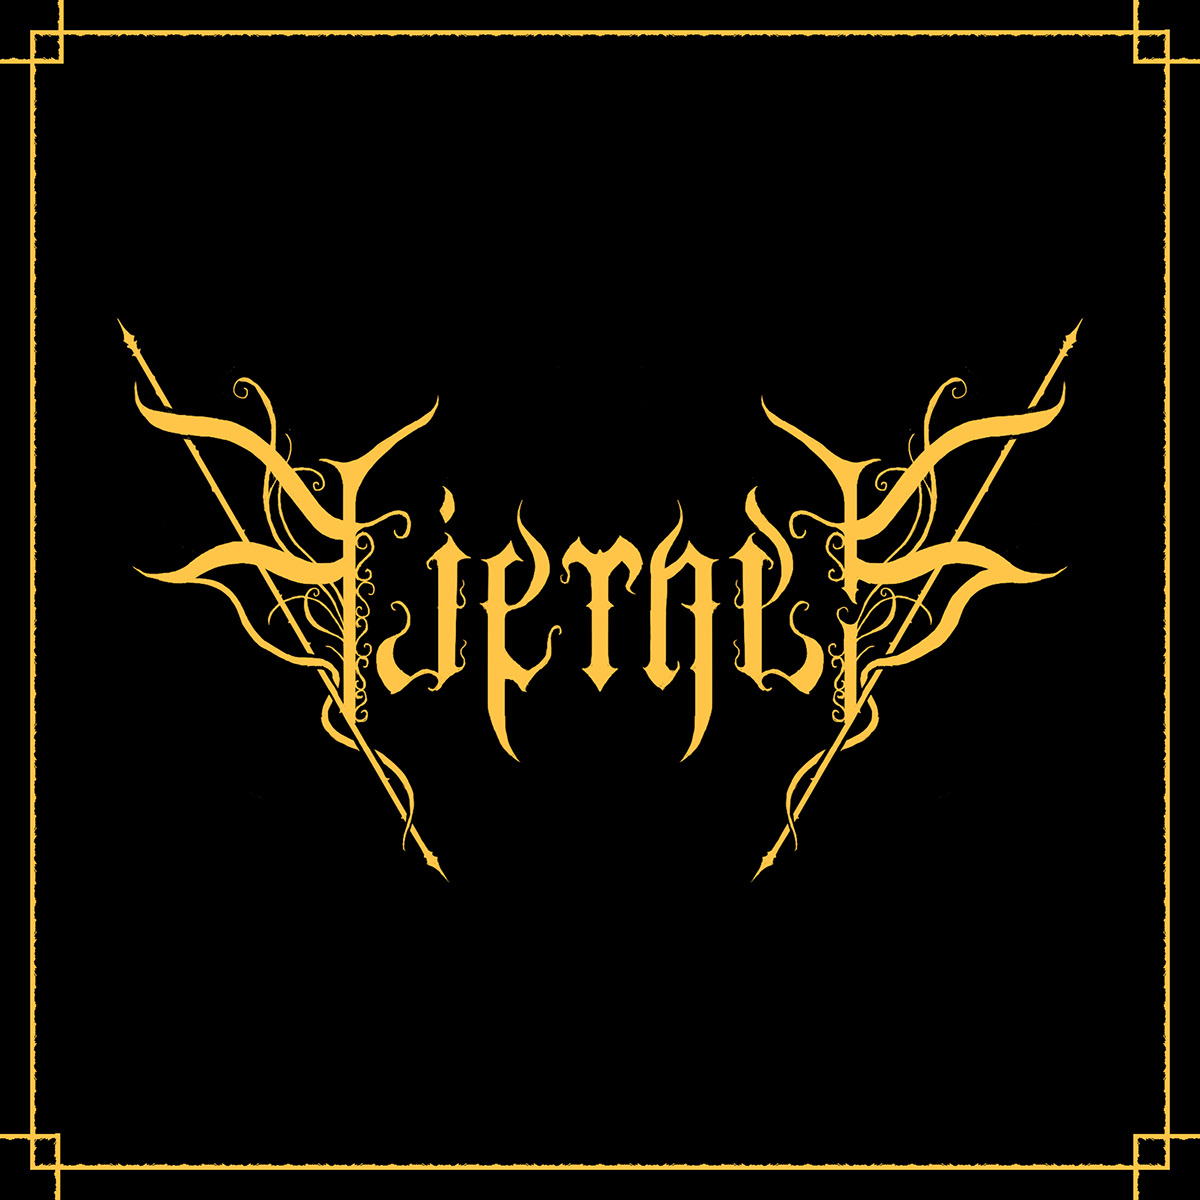 black metal black metal logo death metal death metal logo extreme metal logo gothic metal logo metal metal logo metal logos